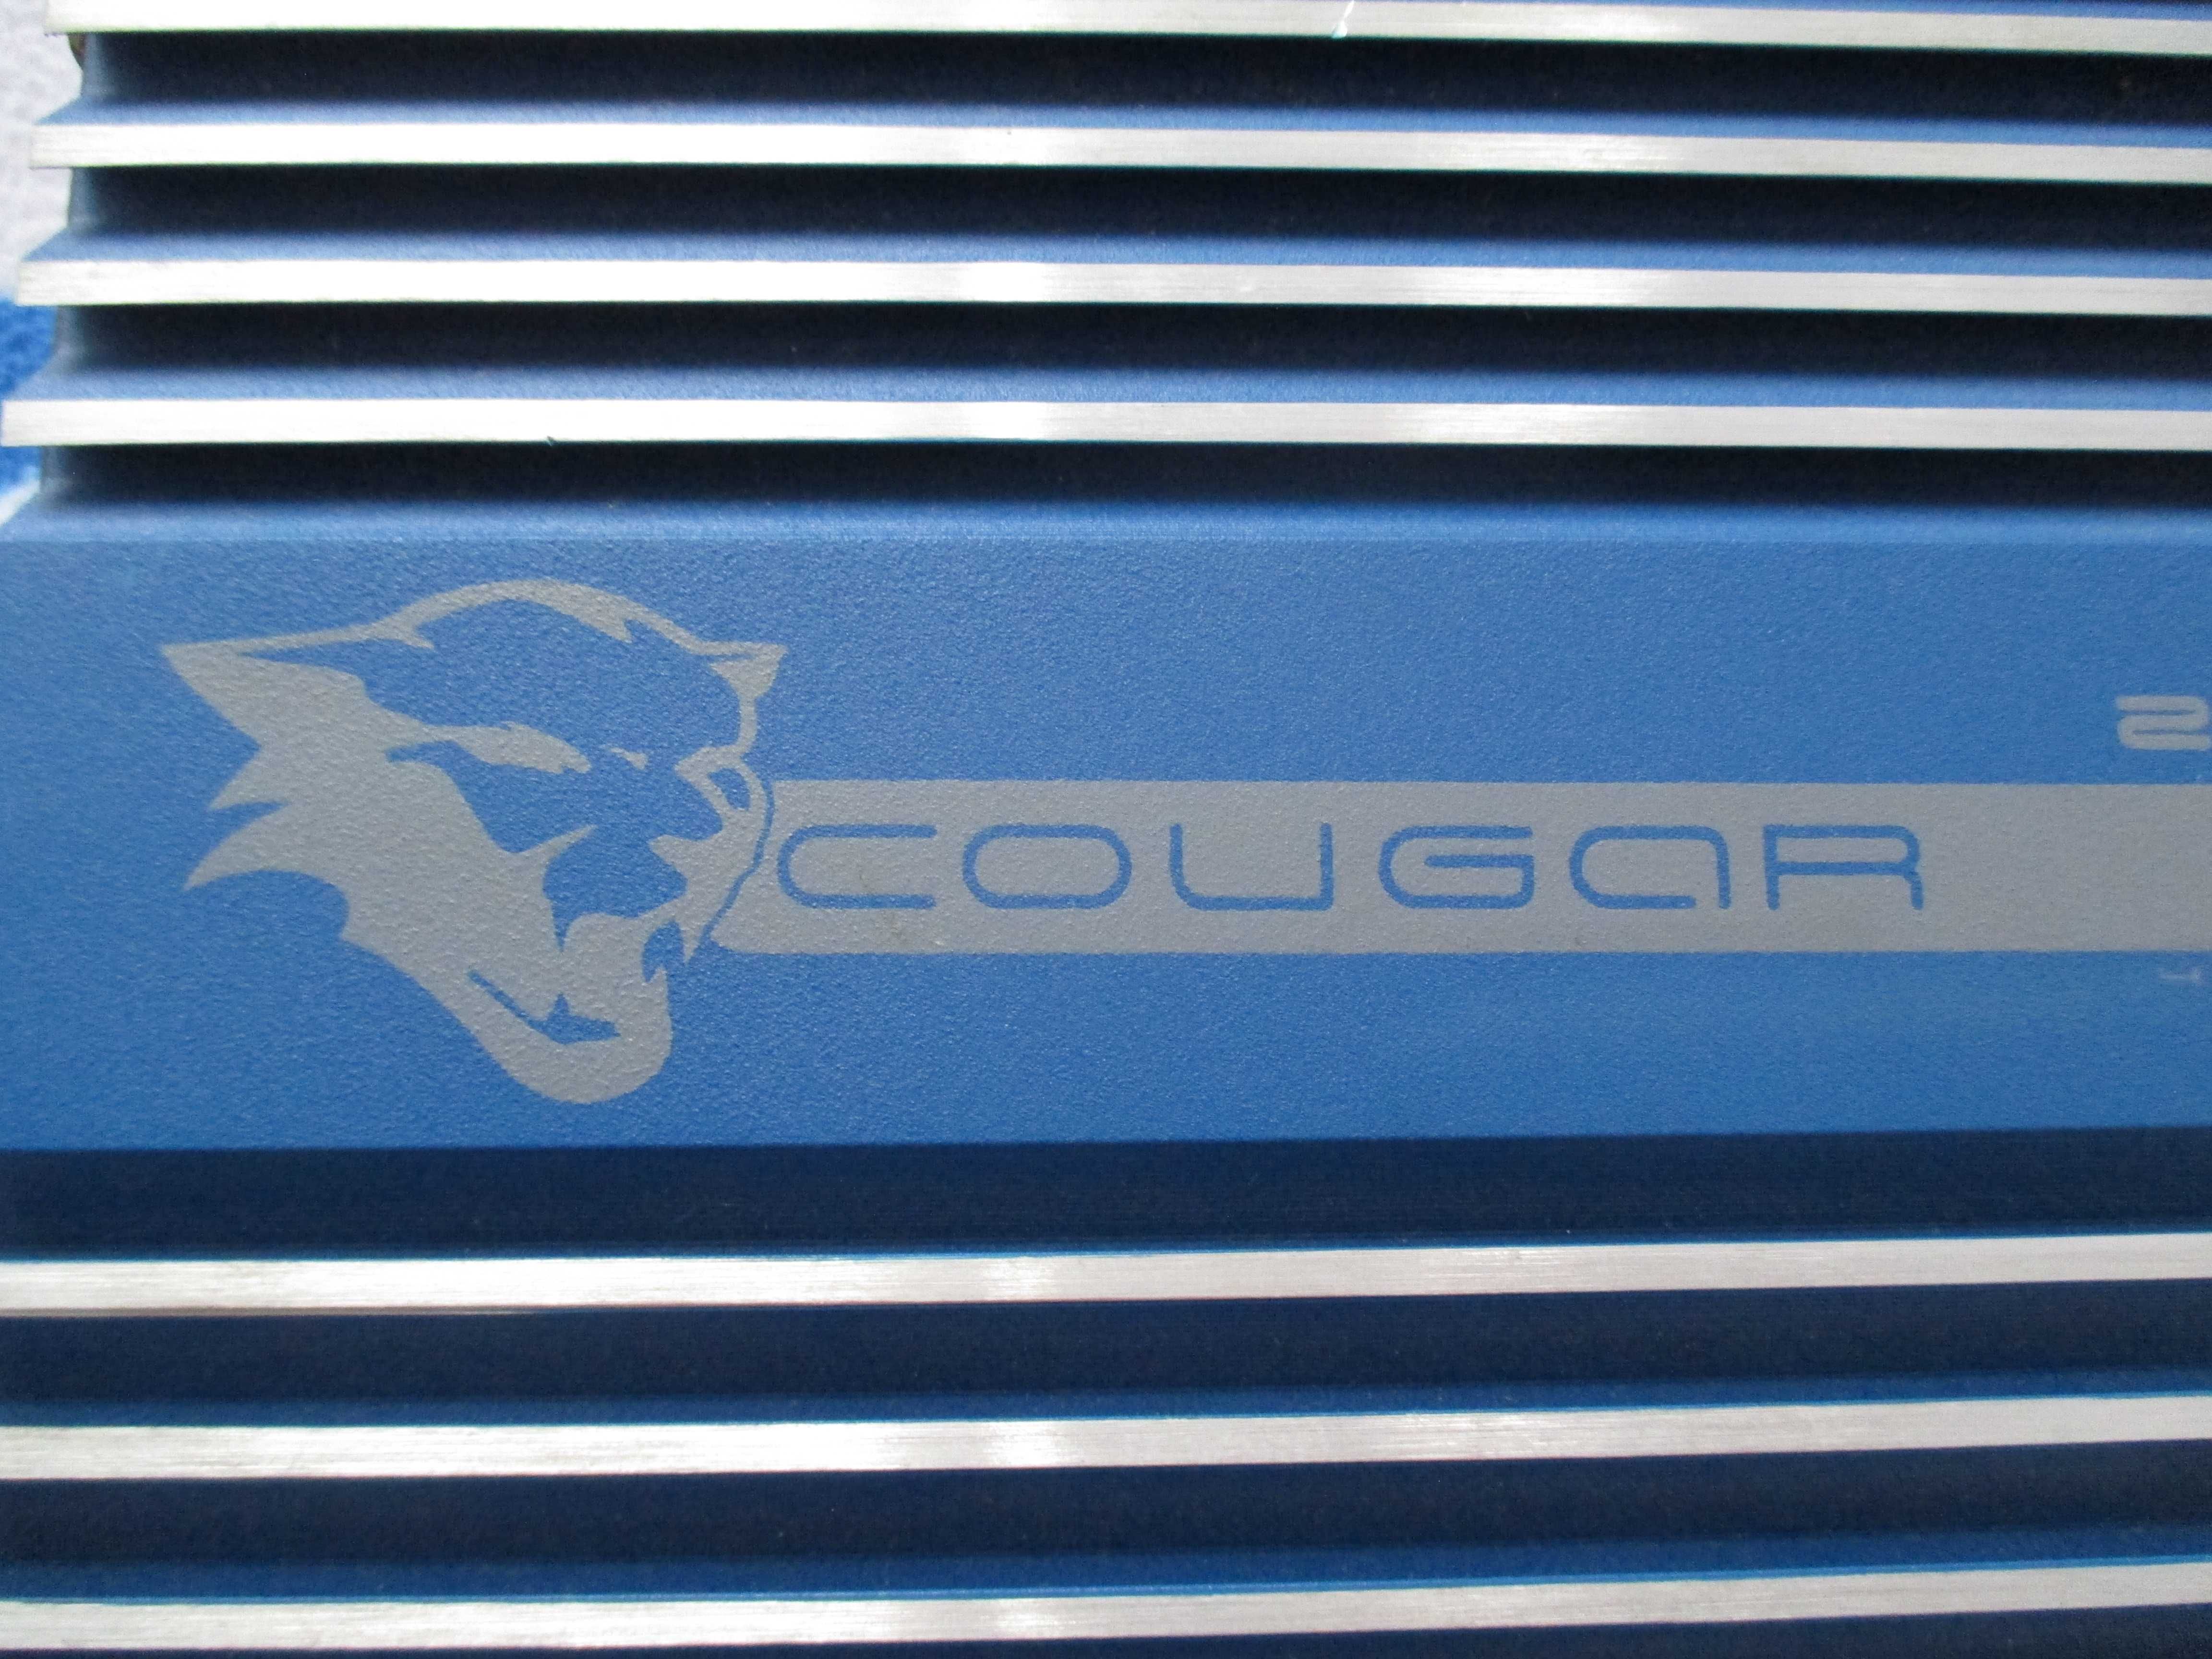 Statie Audio Subwoofer Cougar Model 7004 - 2000 Watt